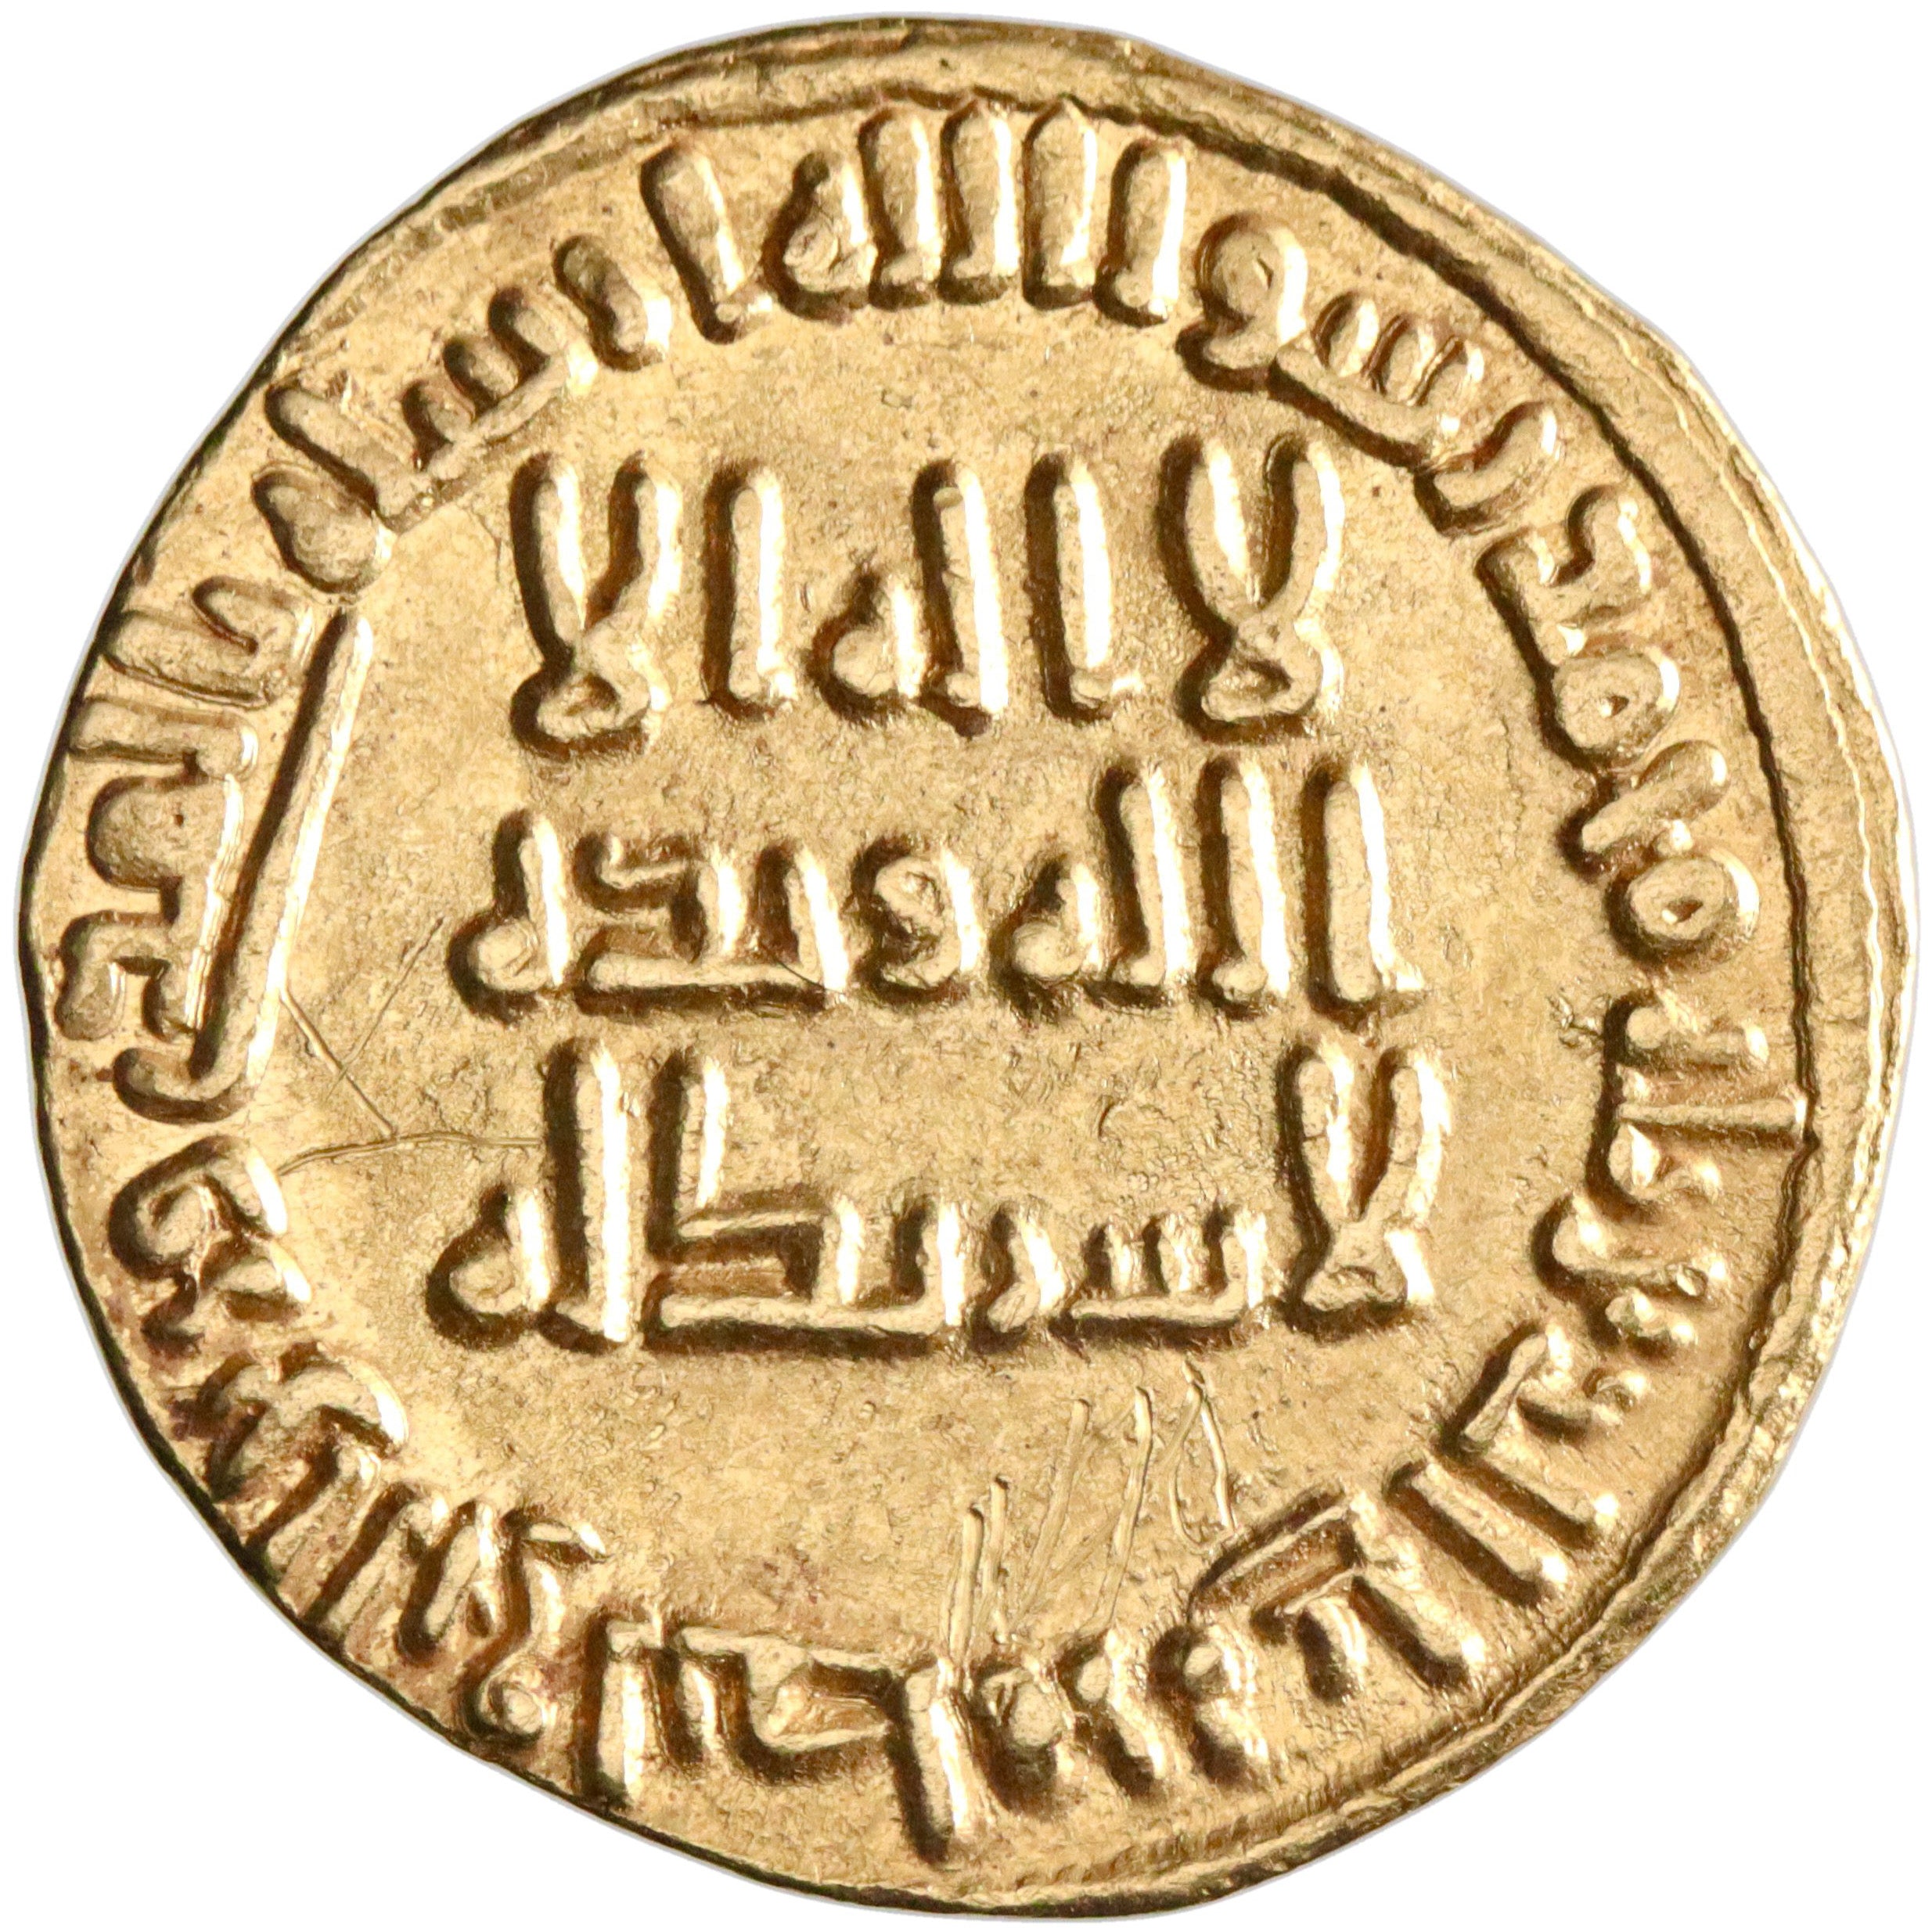 Umayyad, al-Walid I ibn 'Abd al-Malik, gold dinar, AH 91